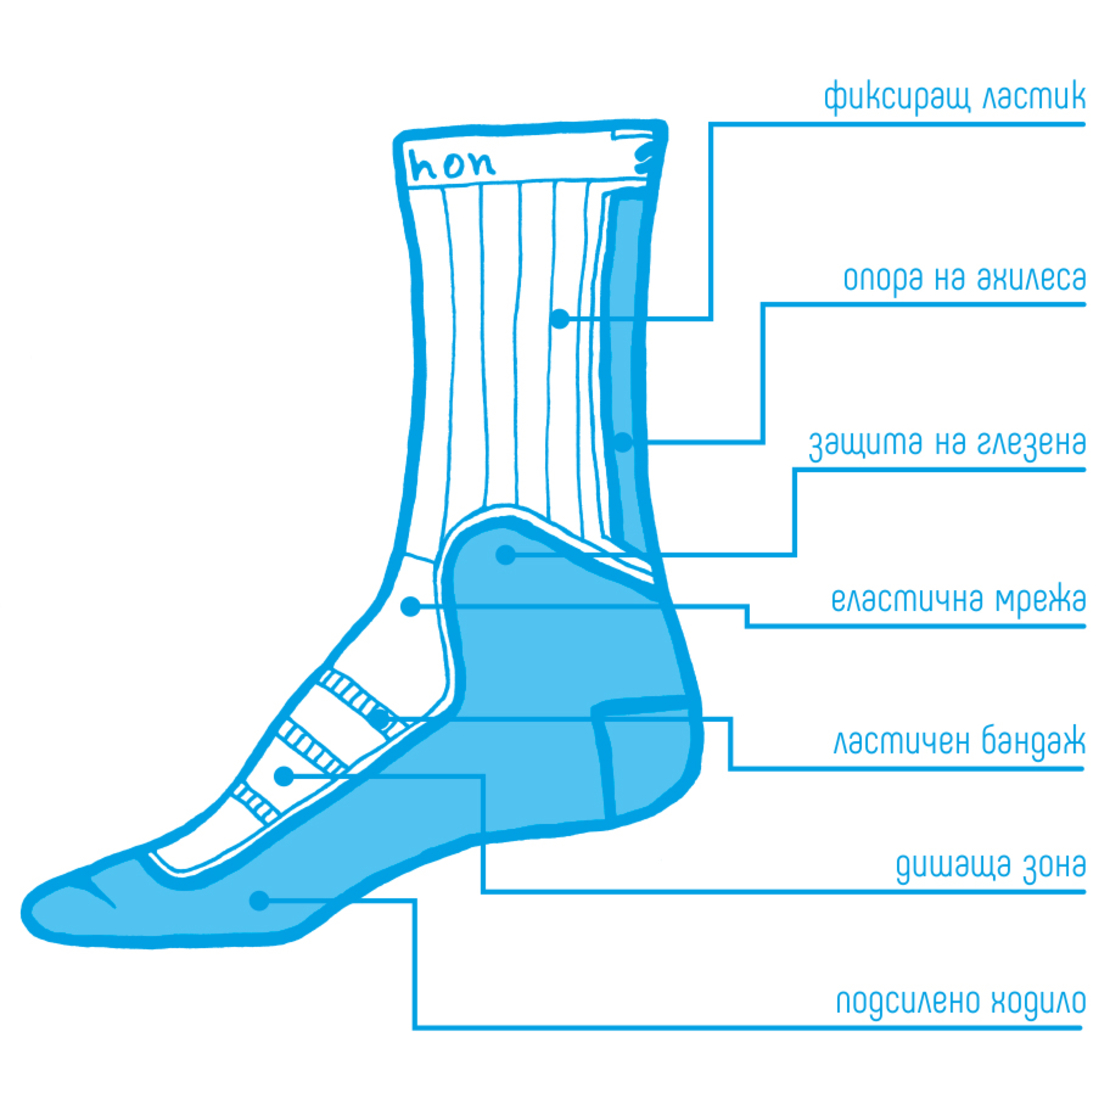 Спортни чорапи от мериносова вълна Shushon Hiker II